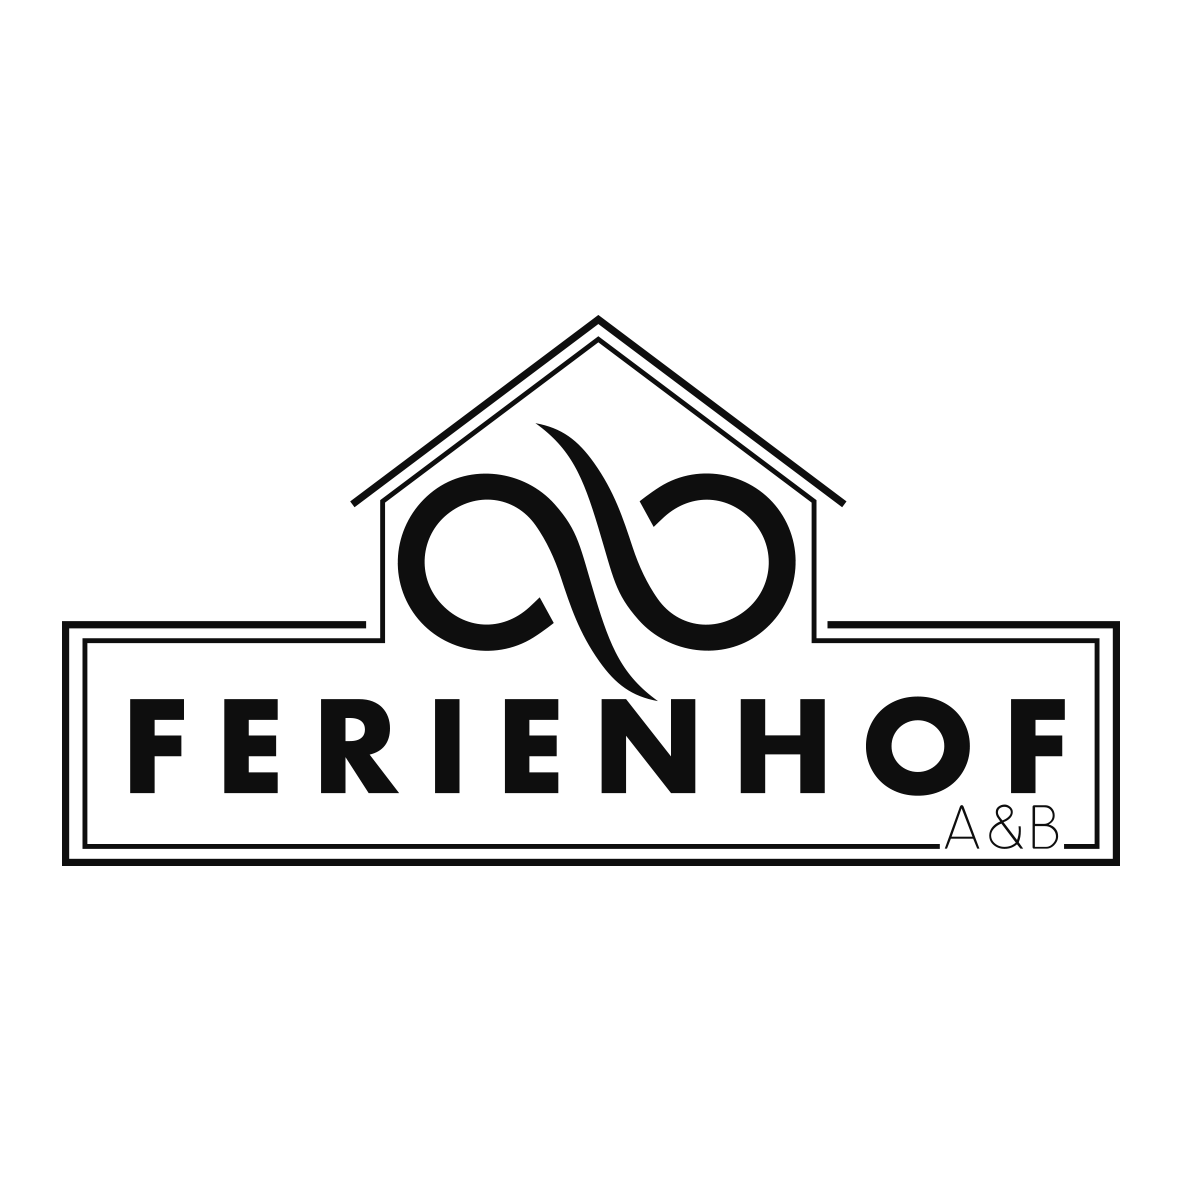 Ferienhof